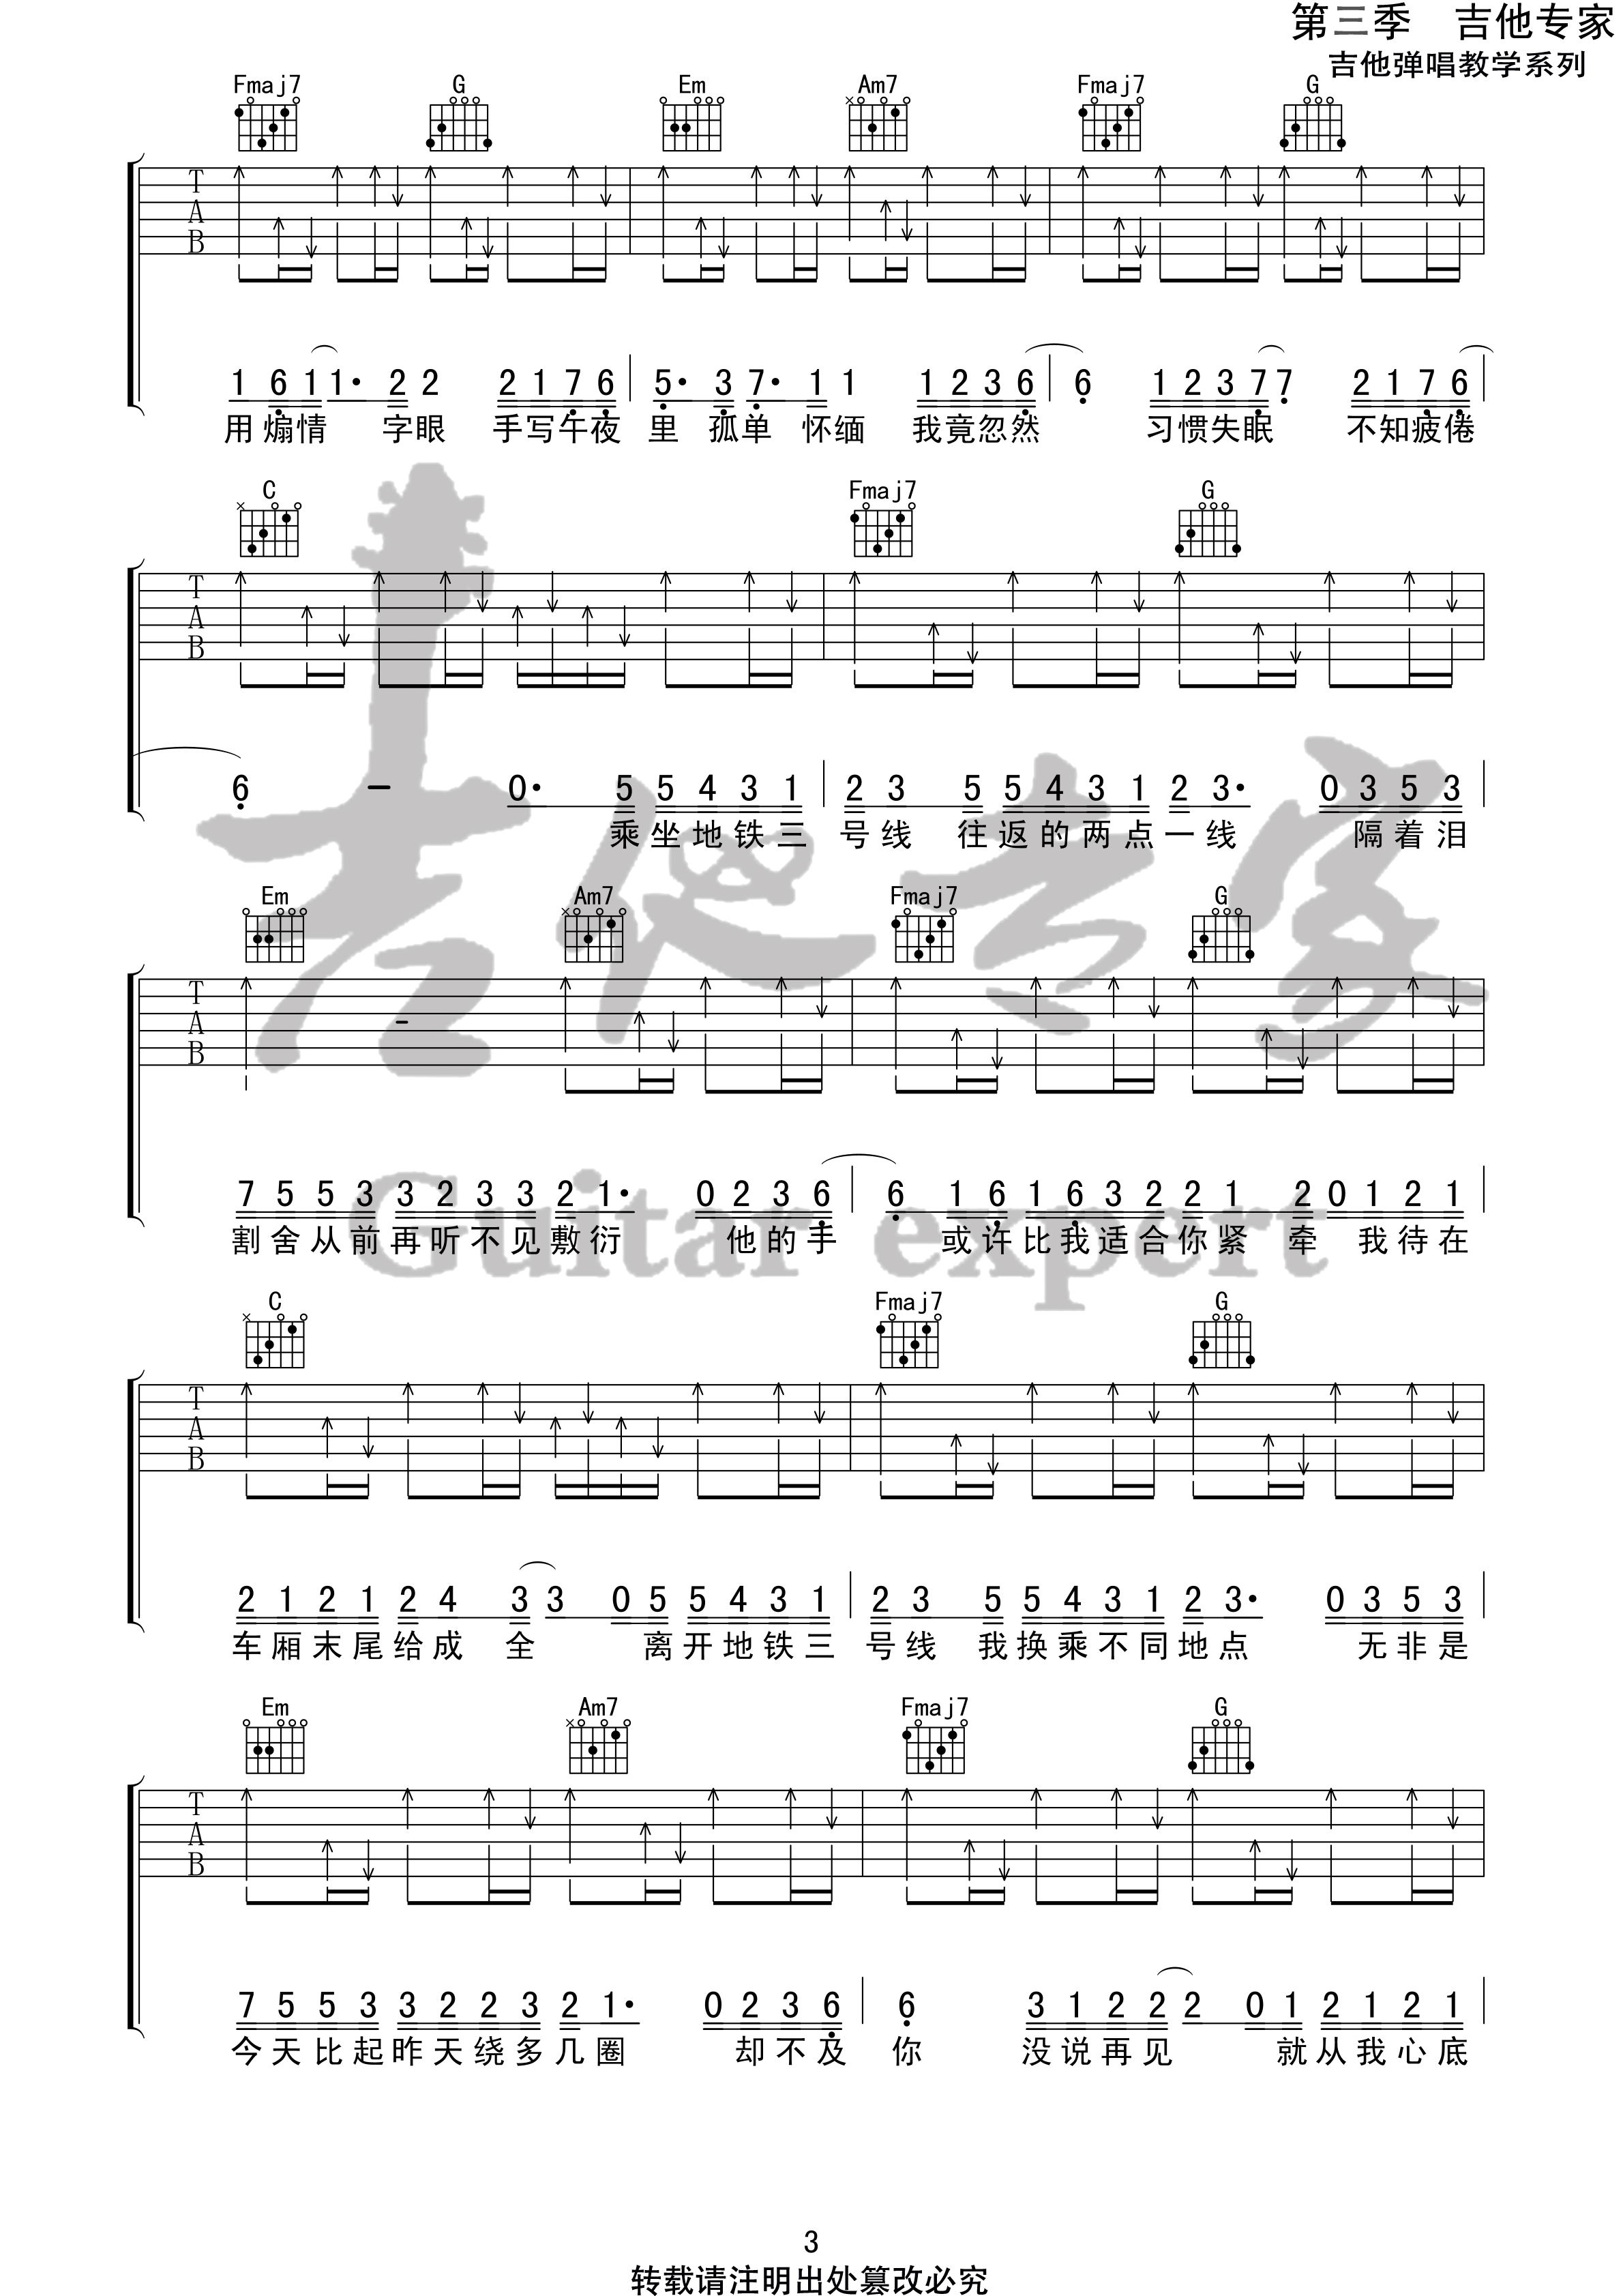 三号线 (音艺吉他专家弹唱教学:第三季第13集)吉他谱(图片谱)_刘大壮_三号线3 第三季第十三集.jpg